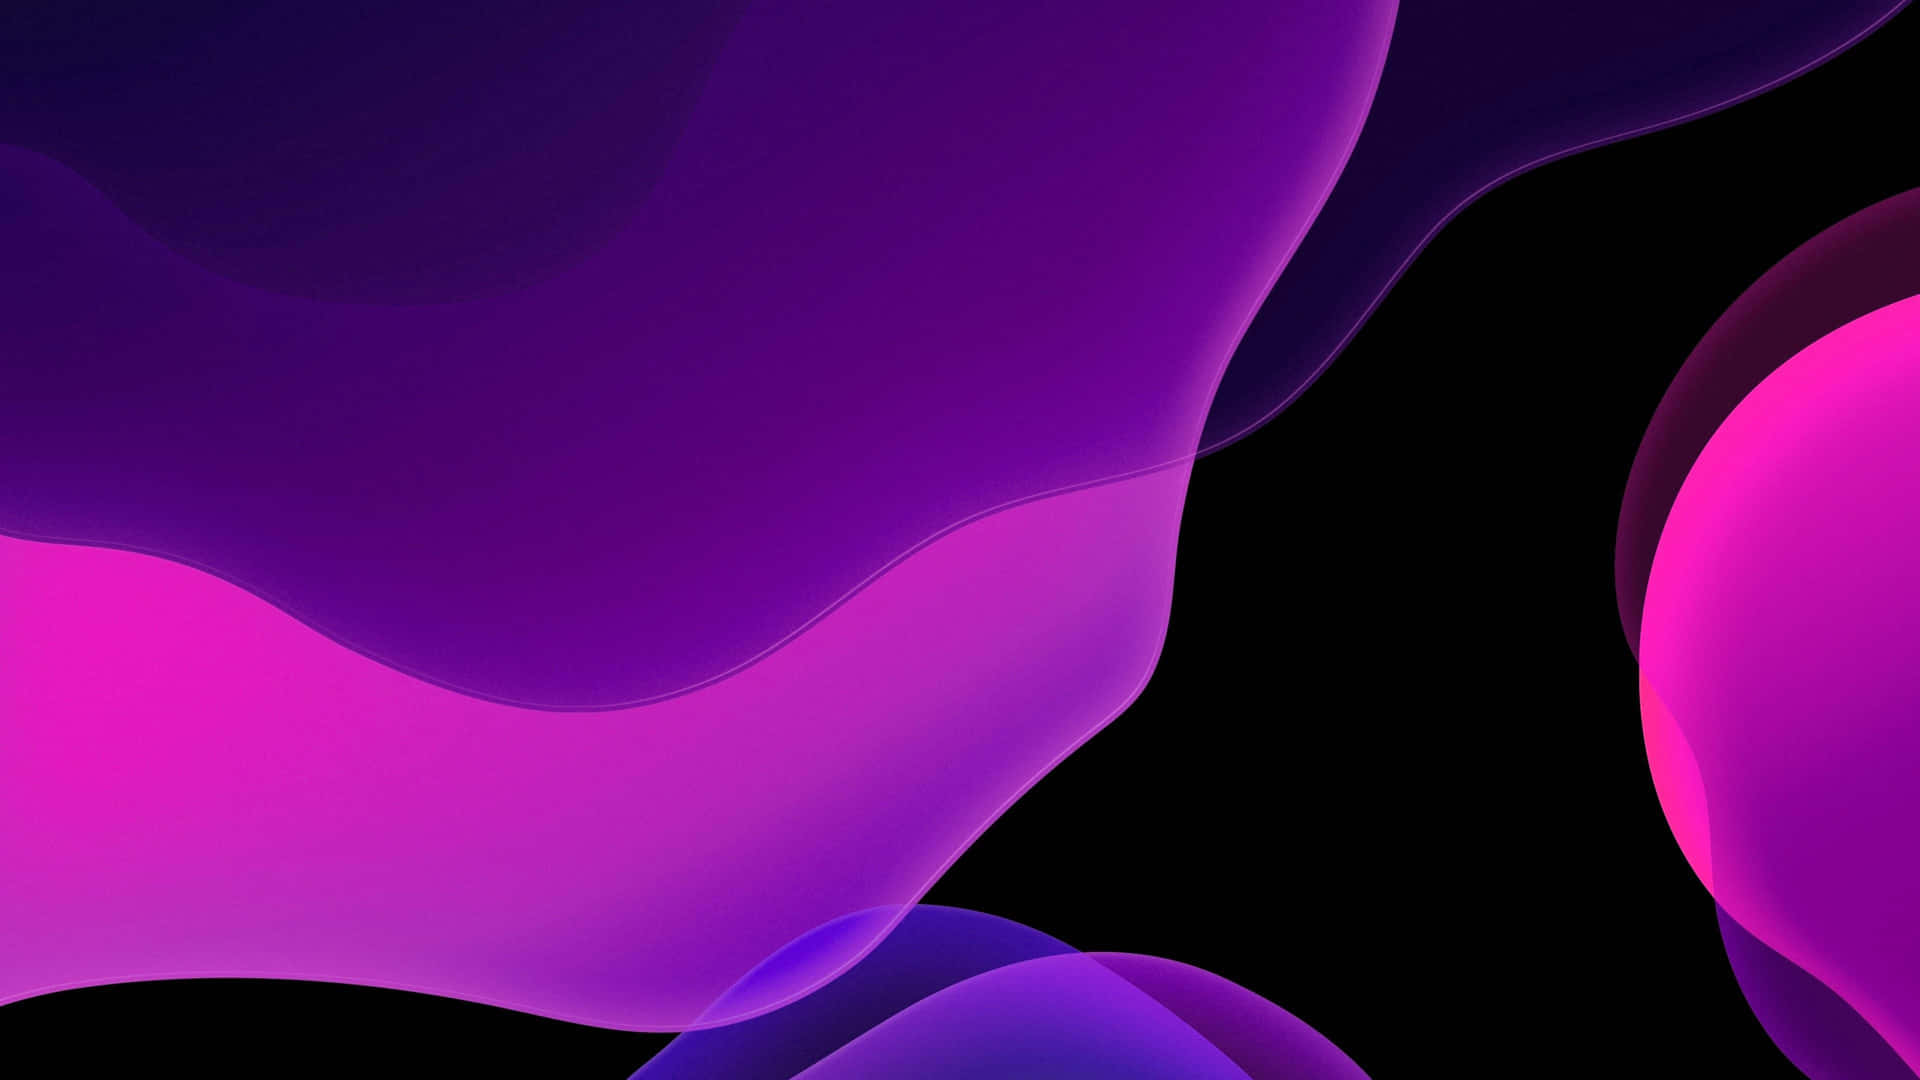 A Contemporary Look of an iOS Desktop Wallpaper